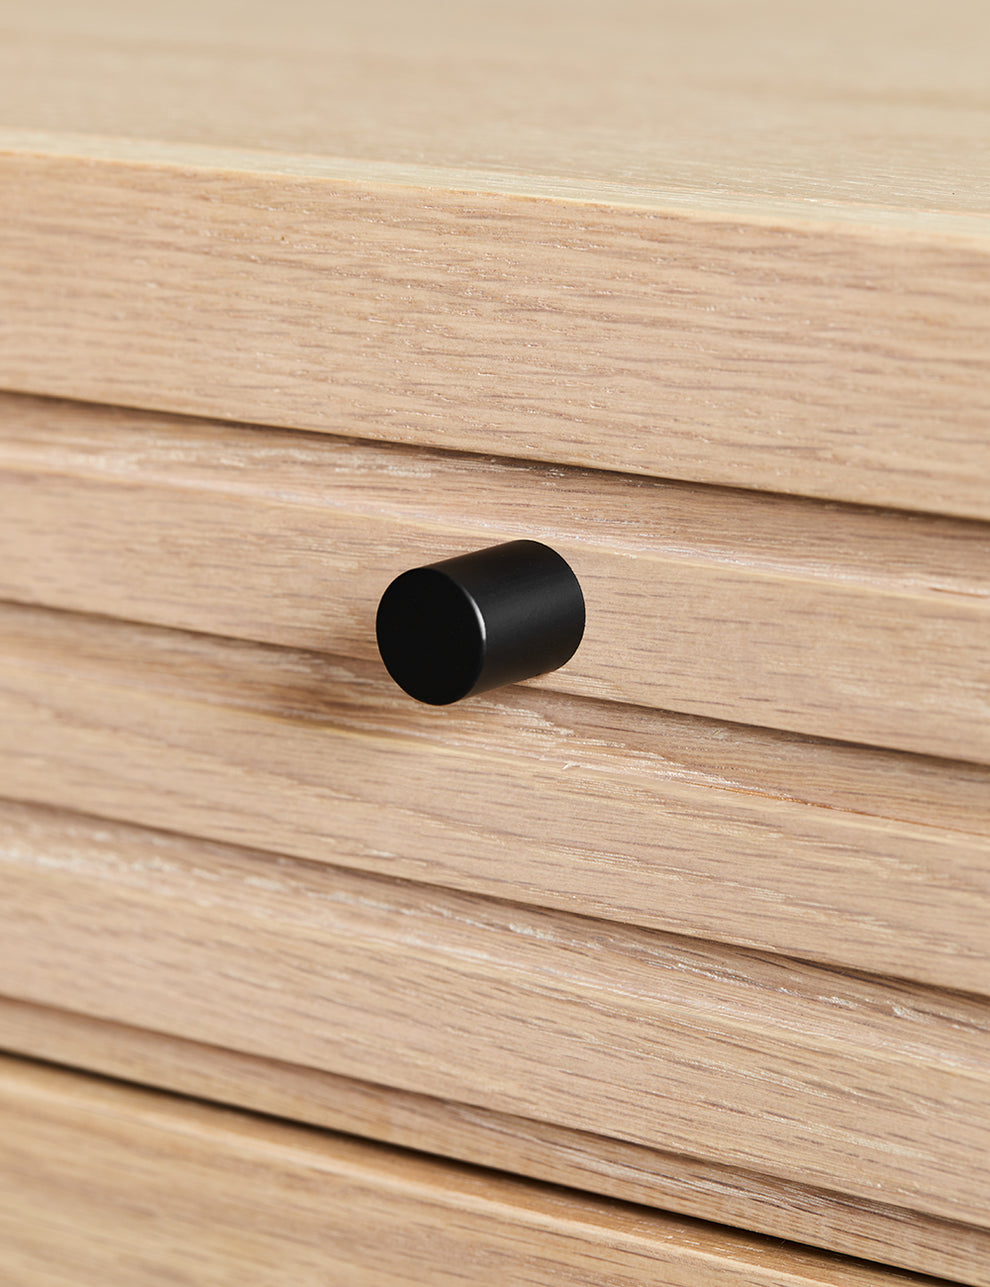 Okayama Wooden Sideboard handle details